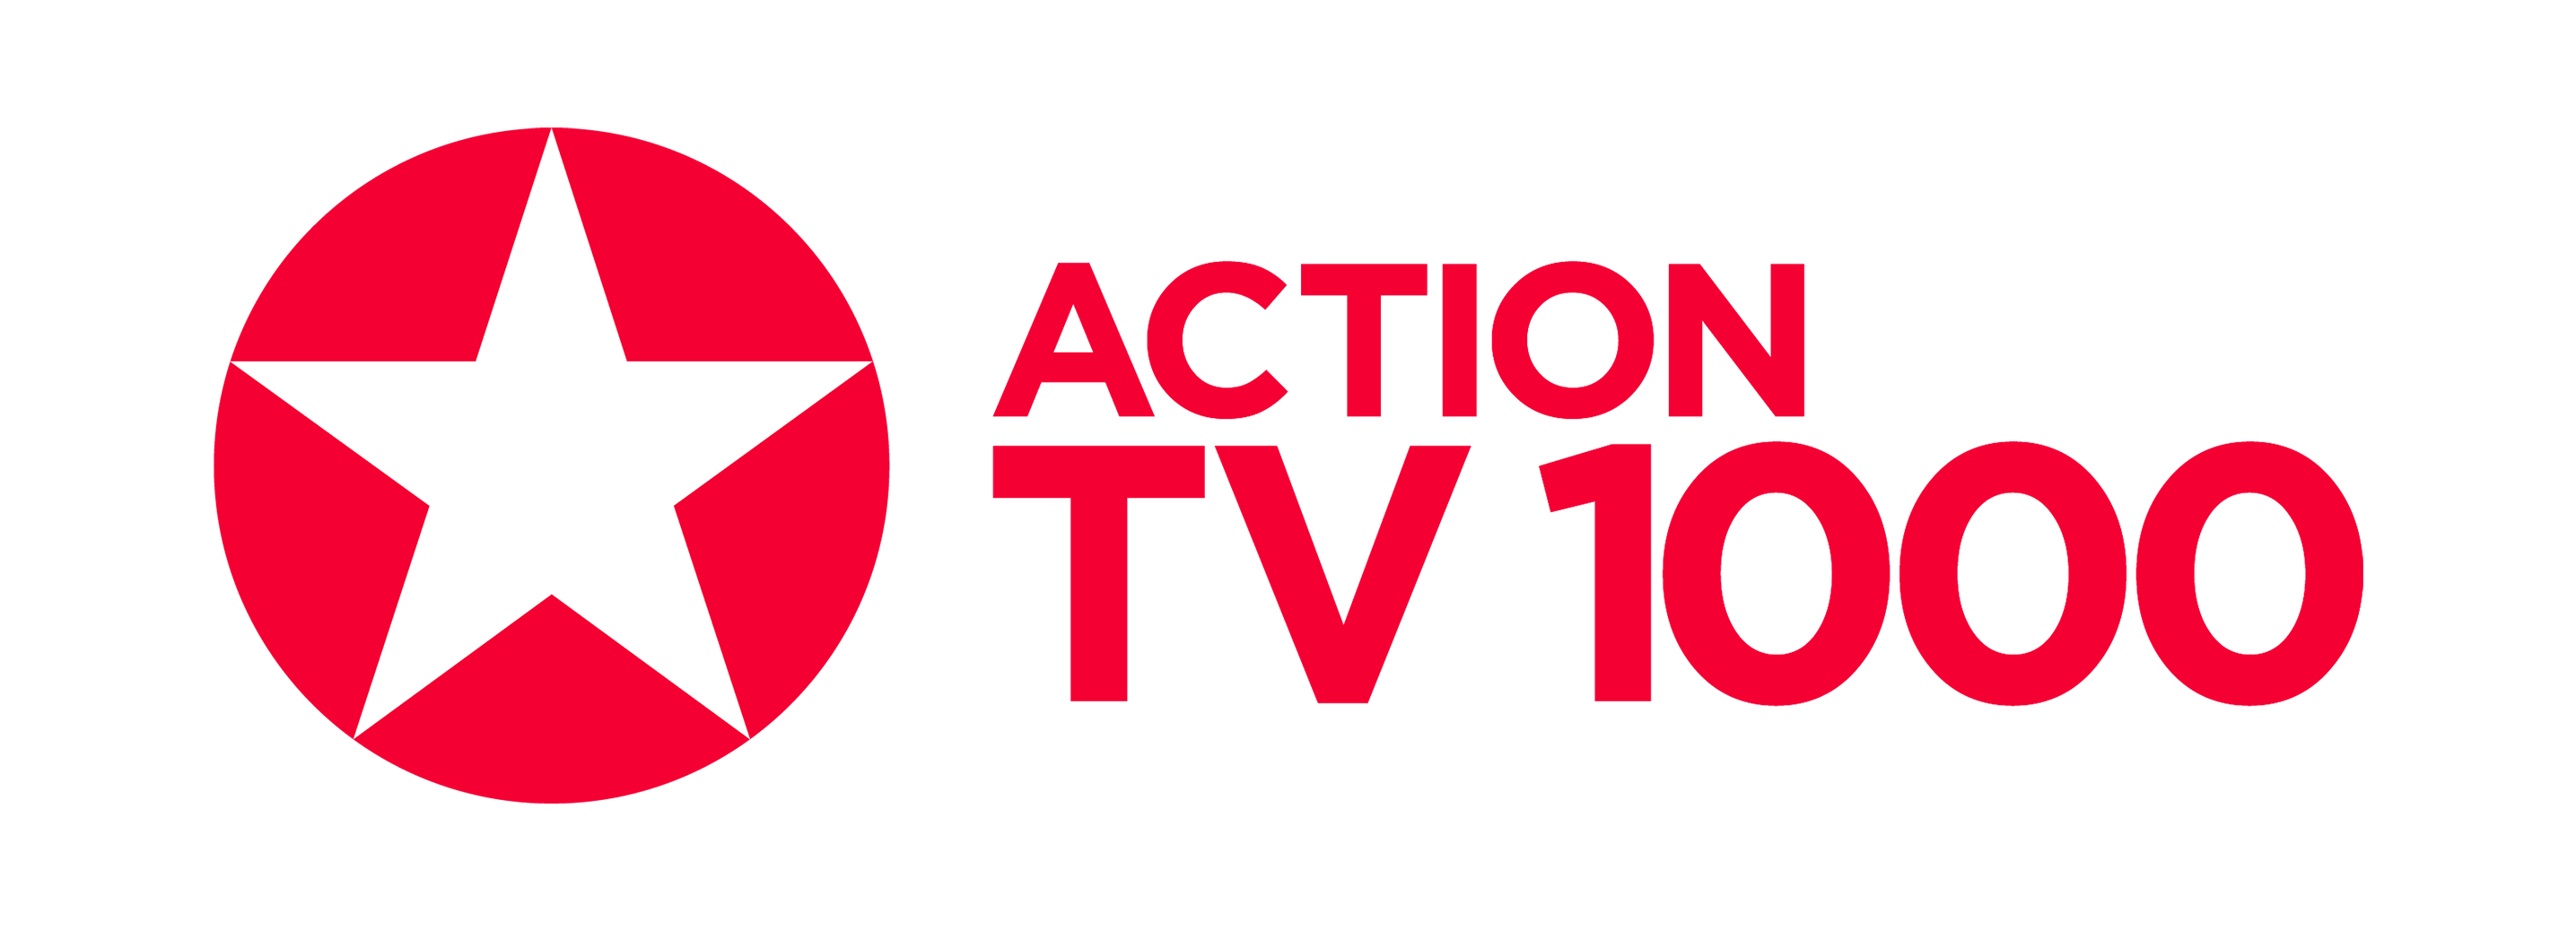 Канал тв1000 хорошего качества. Tv1000. Телеканал tv1000. Tv1000 Action. ТВ 1000 логотип.